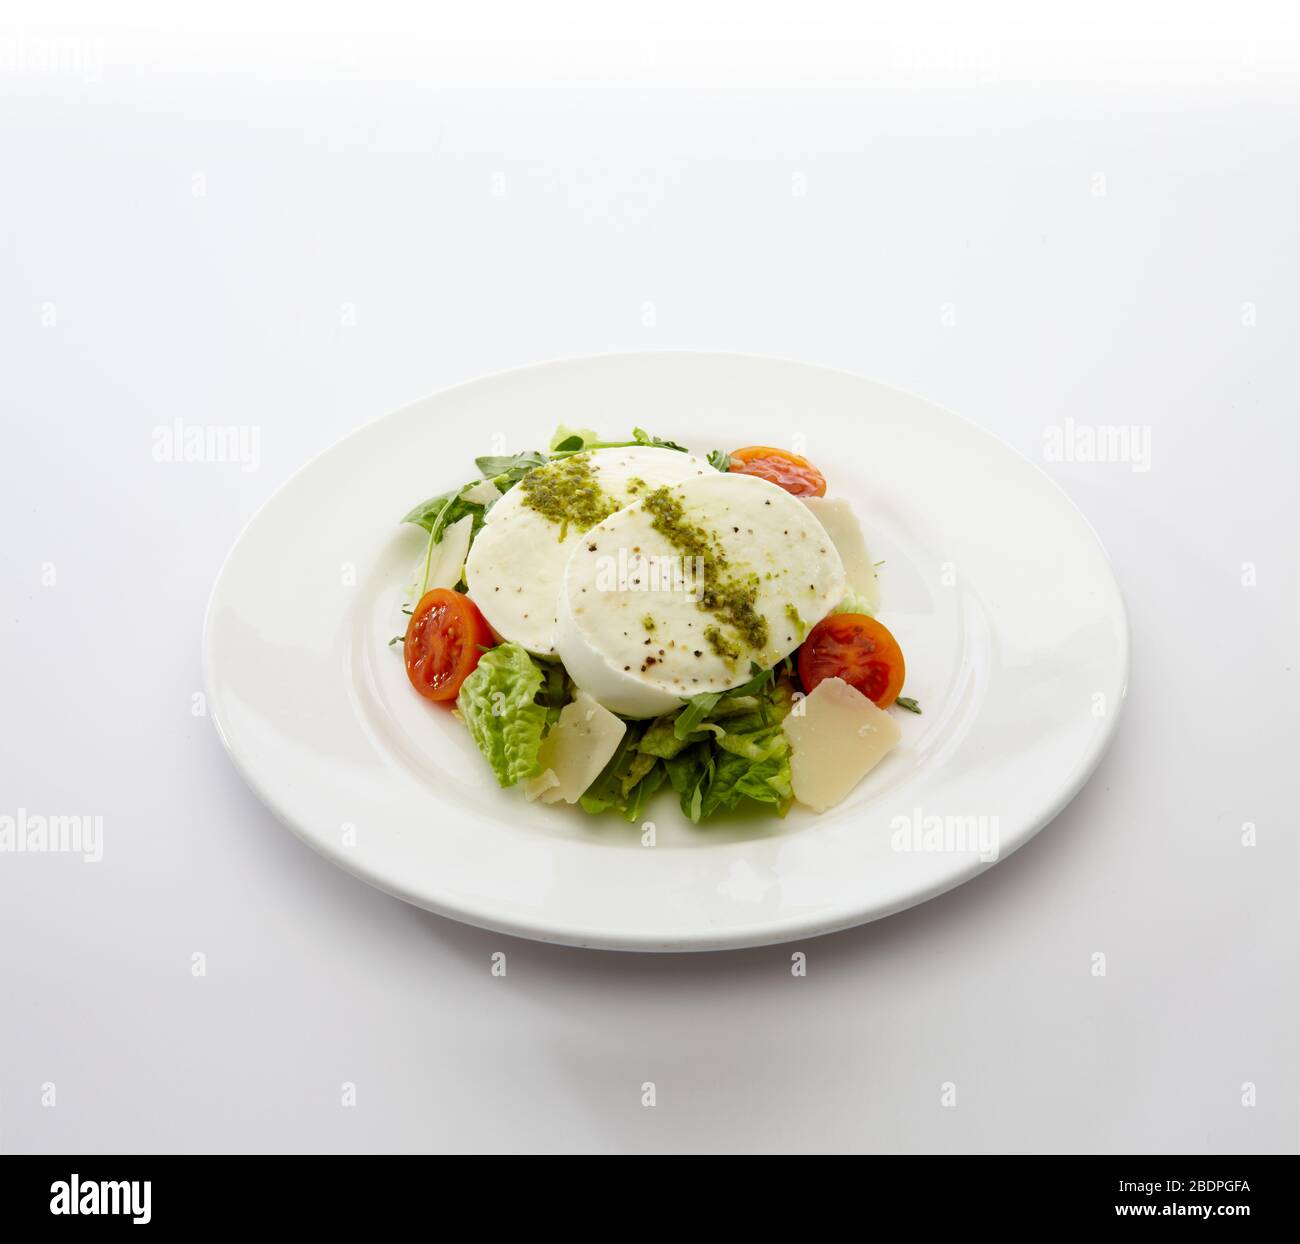 Piatto di mozzarella di bufala con insalata estiva da giardino su sfondo bianco Foto Stock